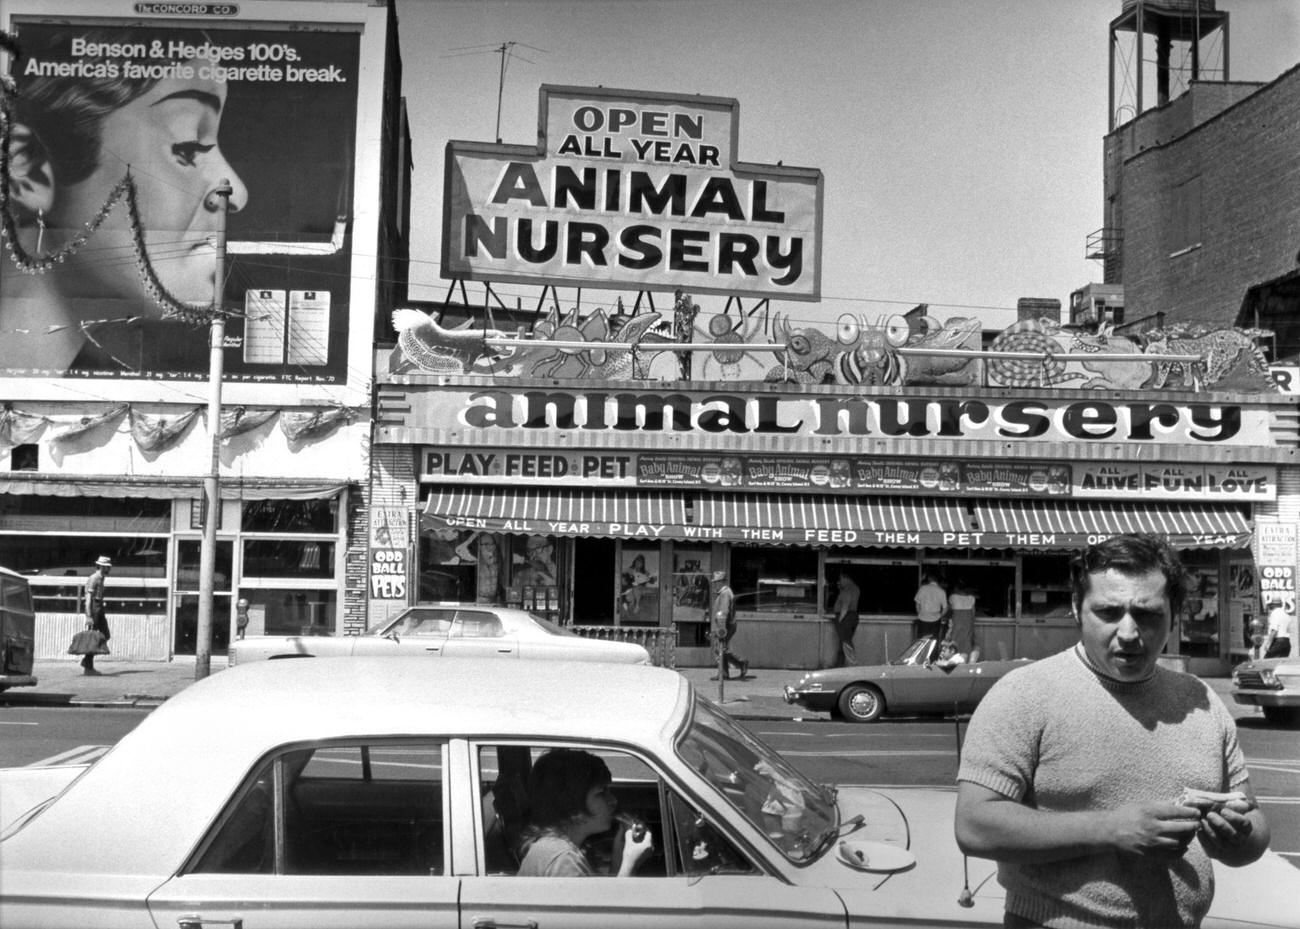 Man Eating Hot Dog In Coney Island, Brooklyn, 1973